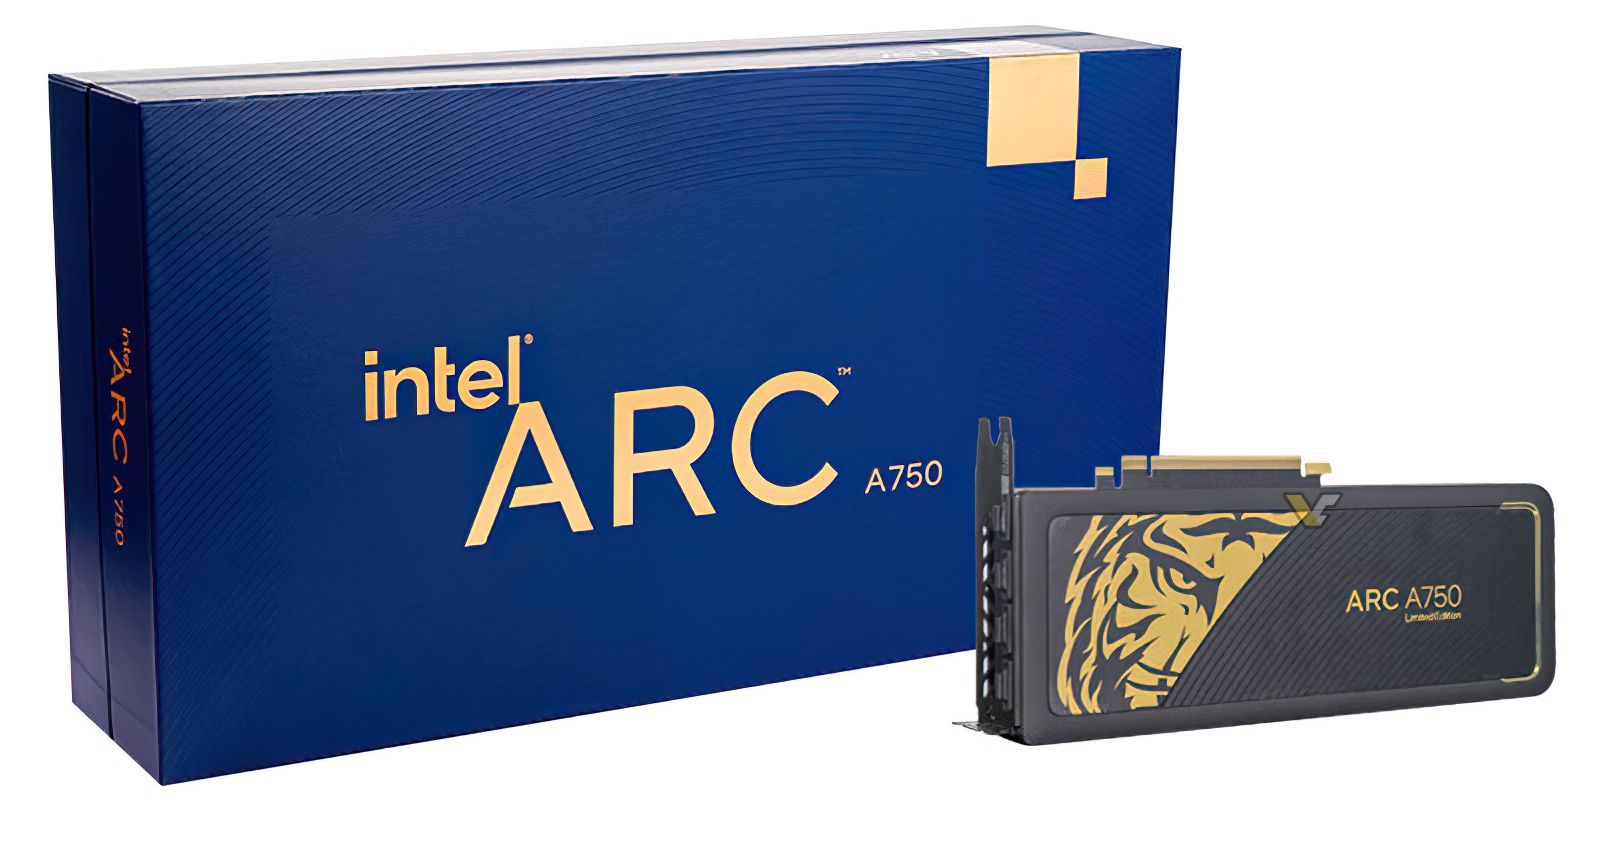 intel arc a750 china 1 อินเทลเปิดตัว Intel Arc A750 Limited ‘Gold’ Edition รุ่นพิเศษวางจำหน่ายในประเทศจีน 